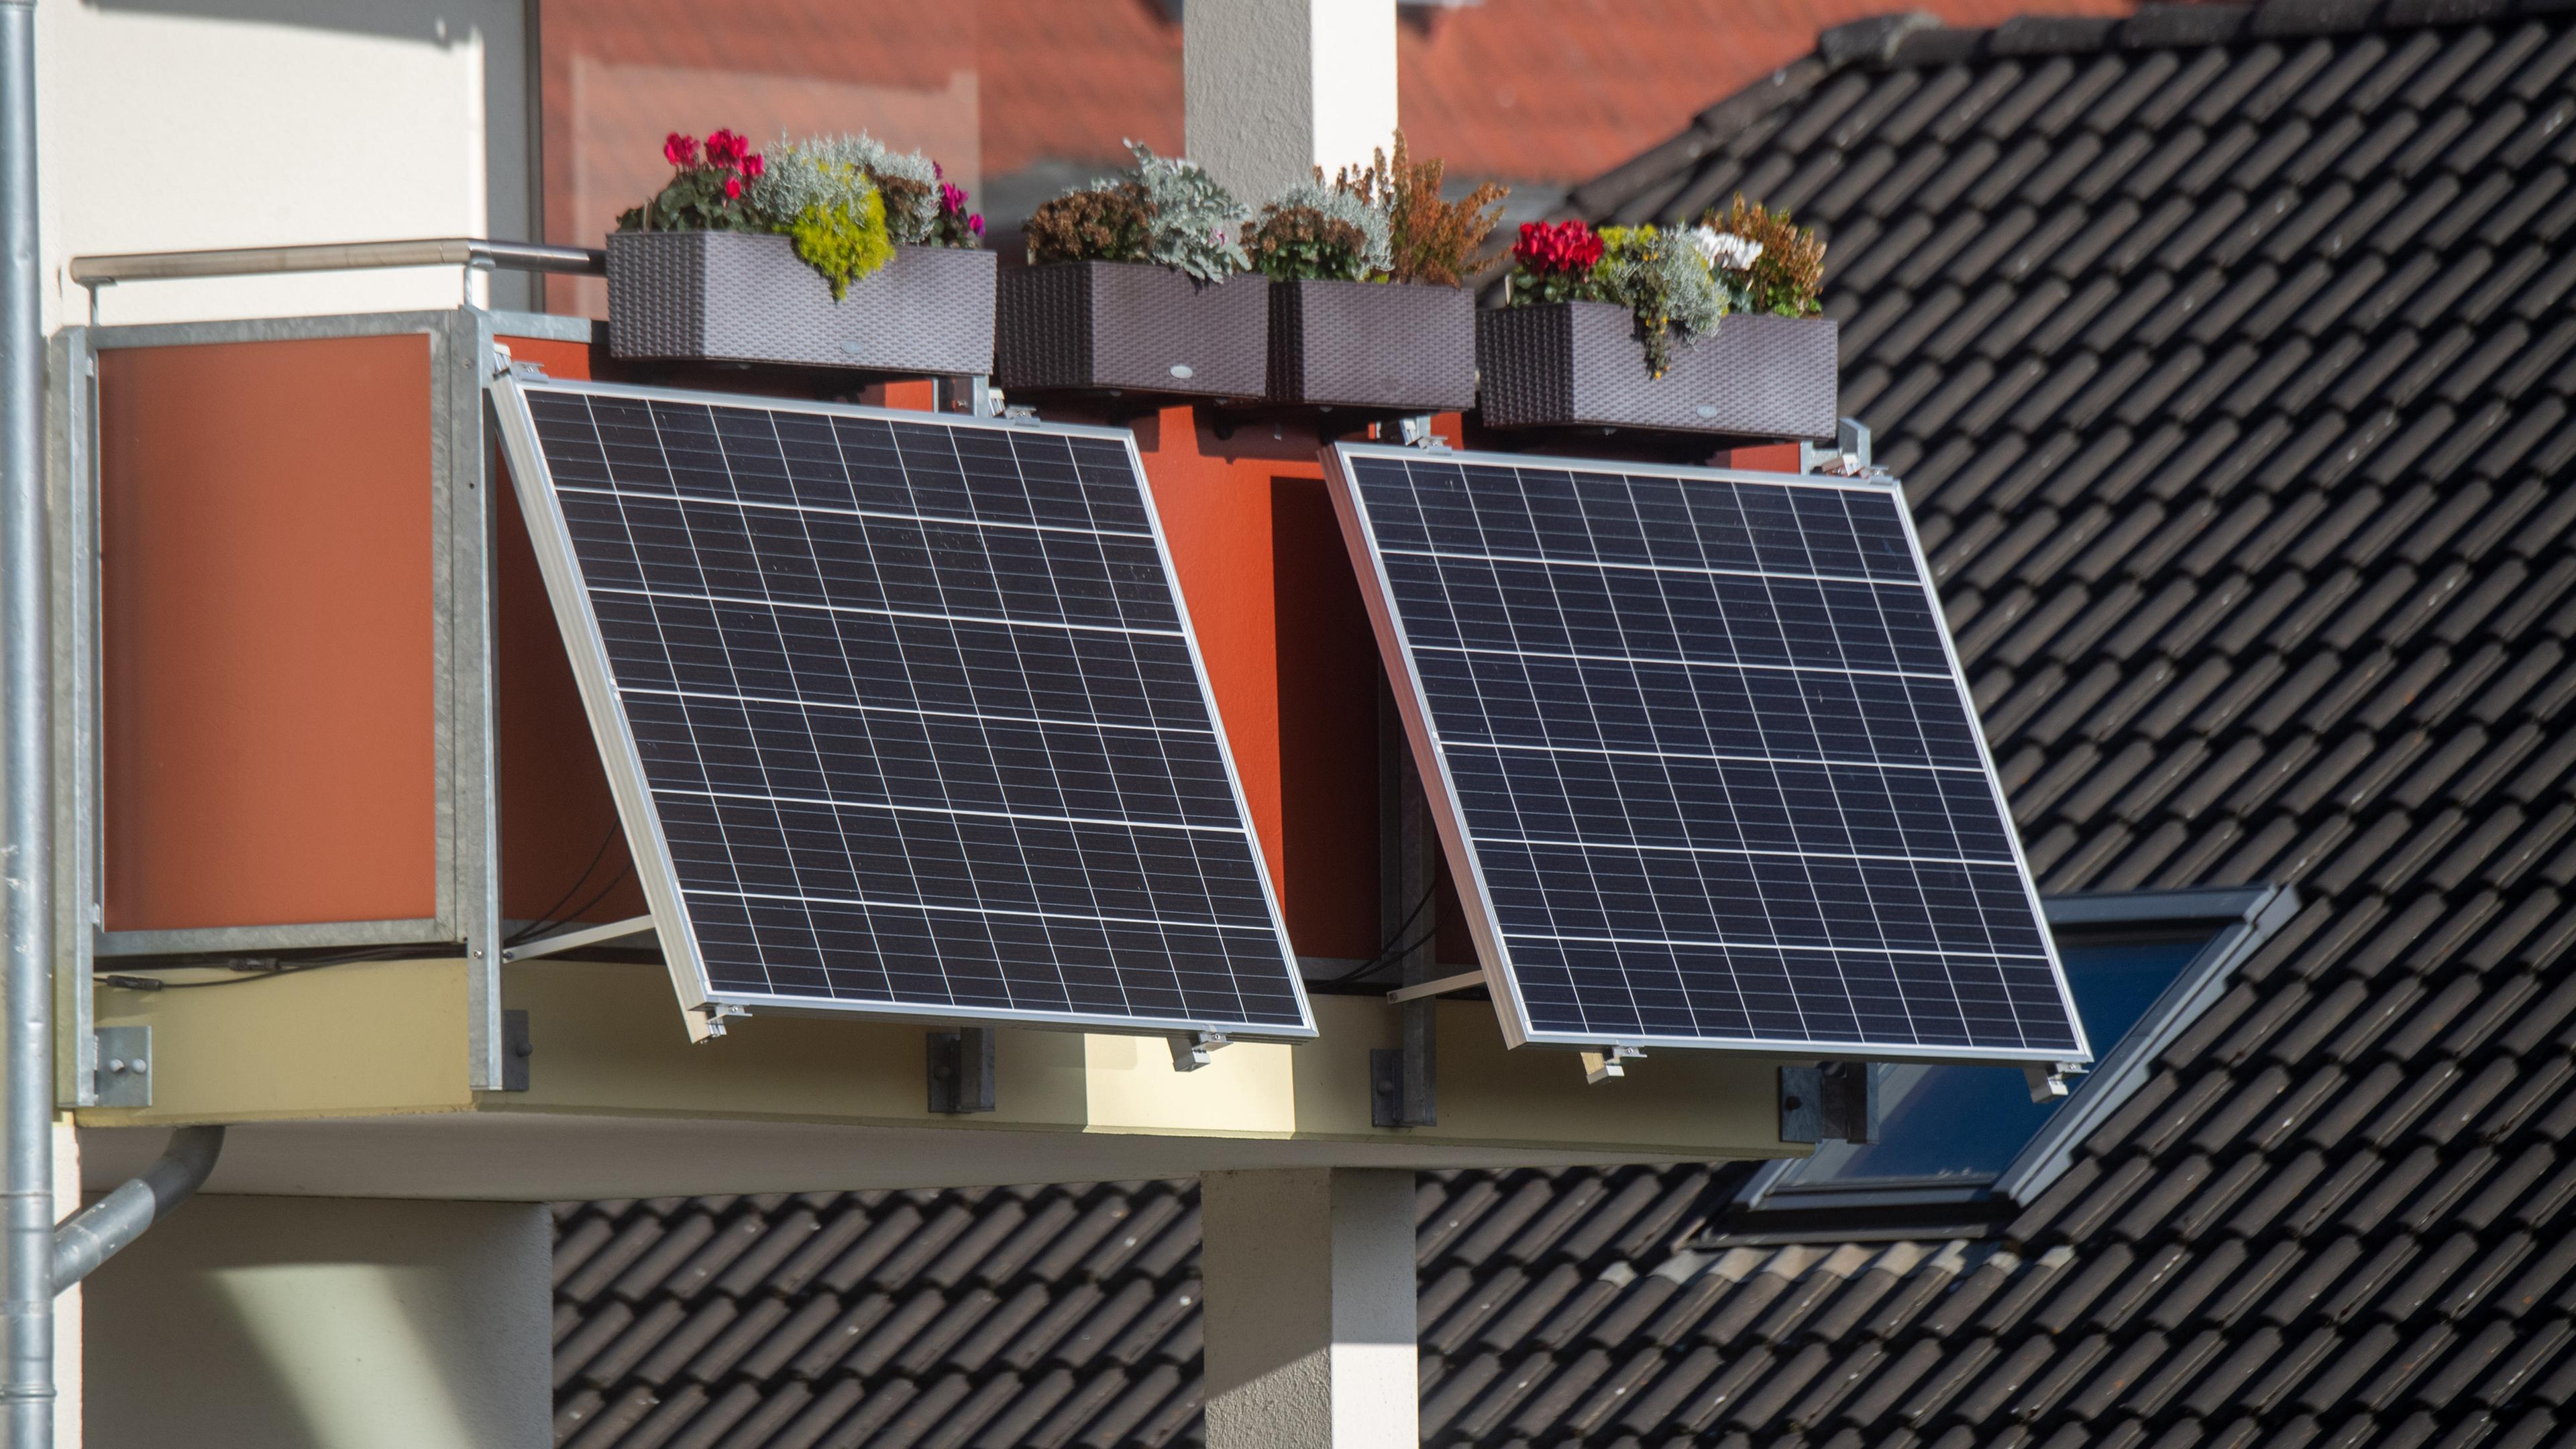 Mecklenburg-Vorpommern, Stralsund: Solarmodule für ein Balkonkraftwerk hängen an einem Balkon.